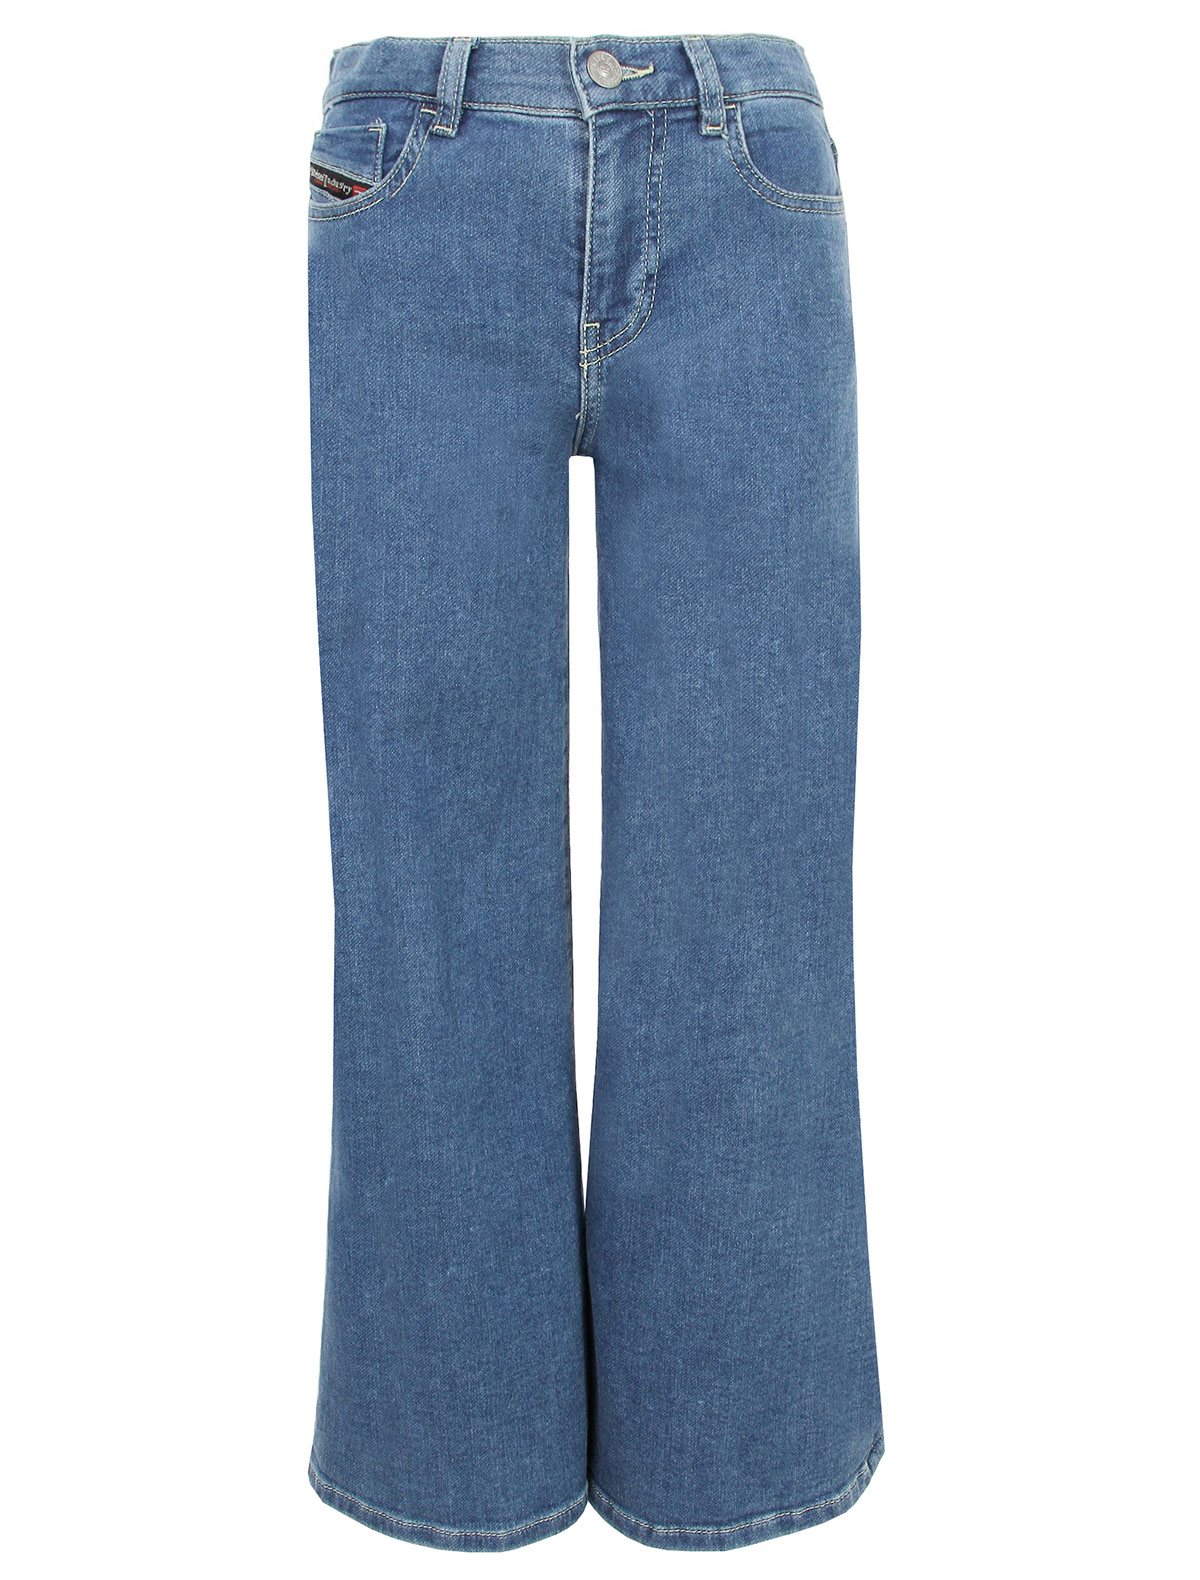 джинсы diesel для девочки, синие